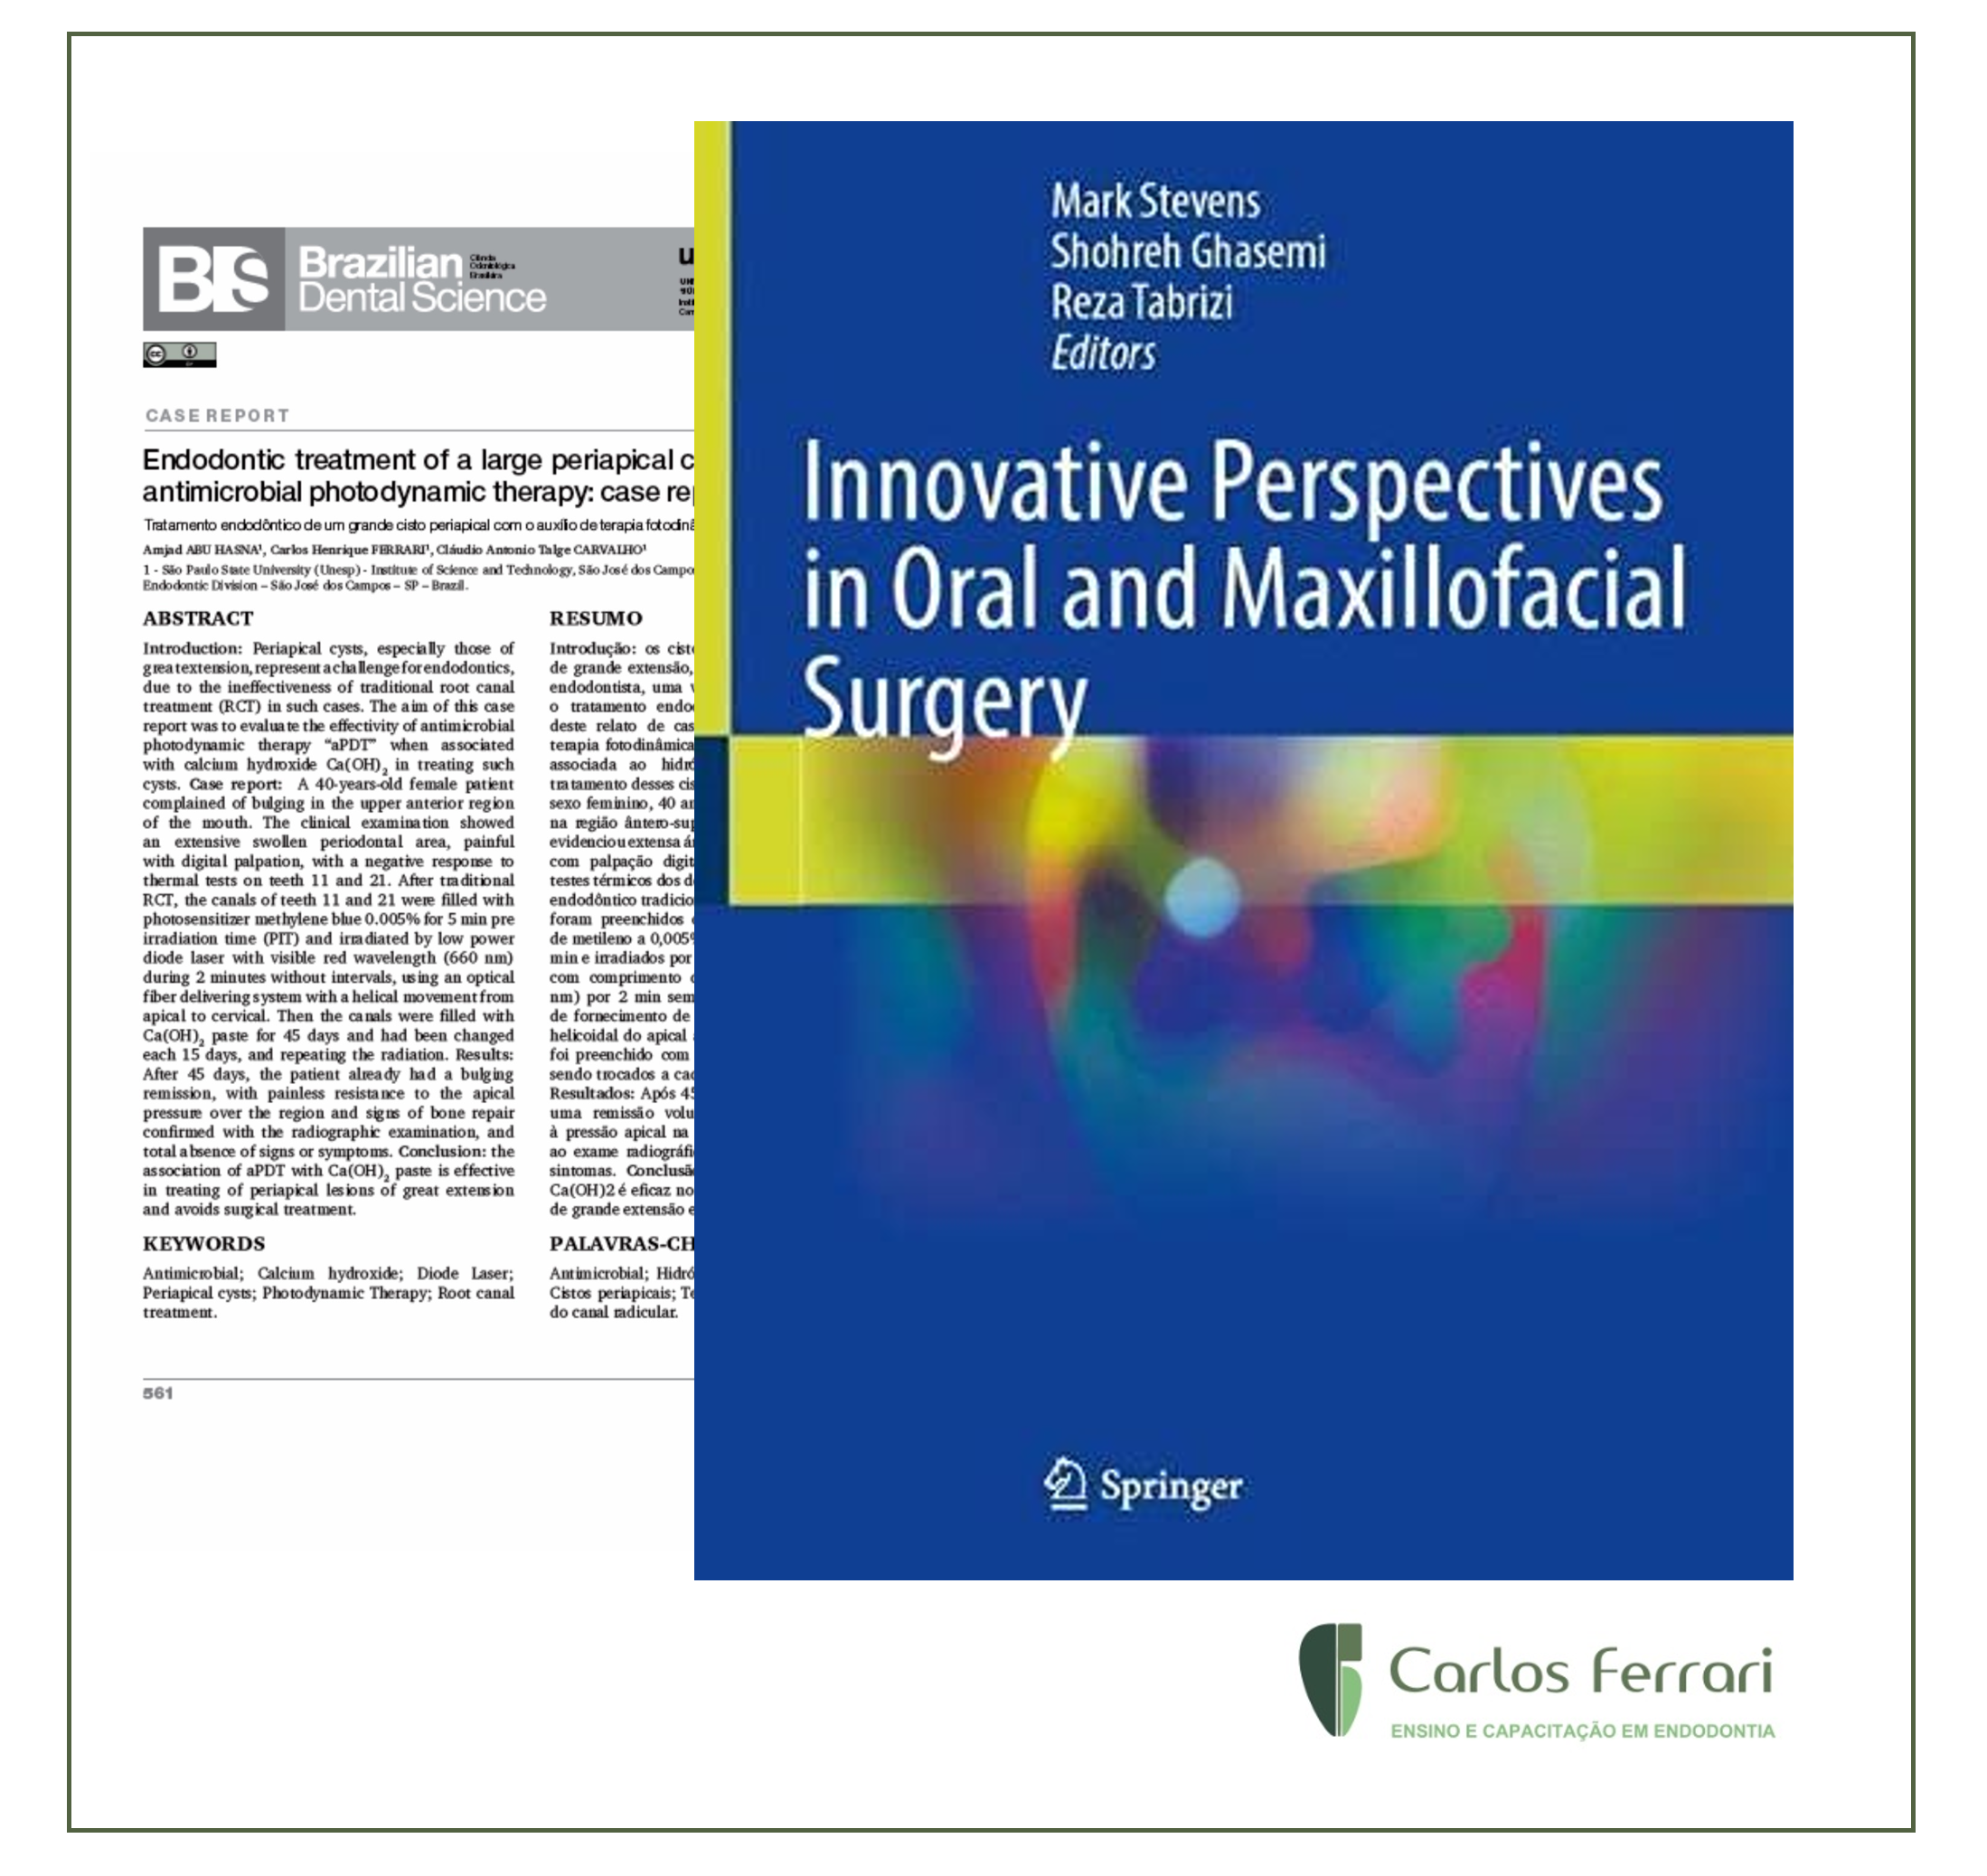 Está viendo Artículo citado en el libro "Innovative Perspectives in Oral and Maxillofacial Surgery